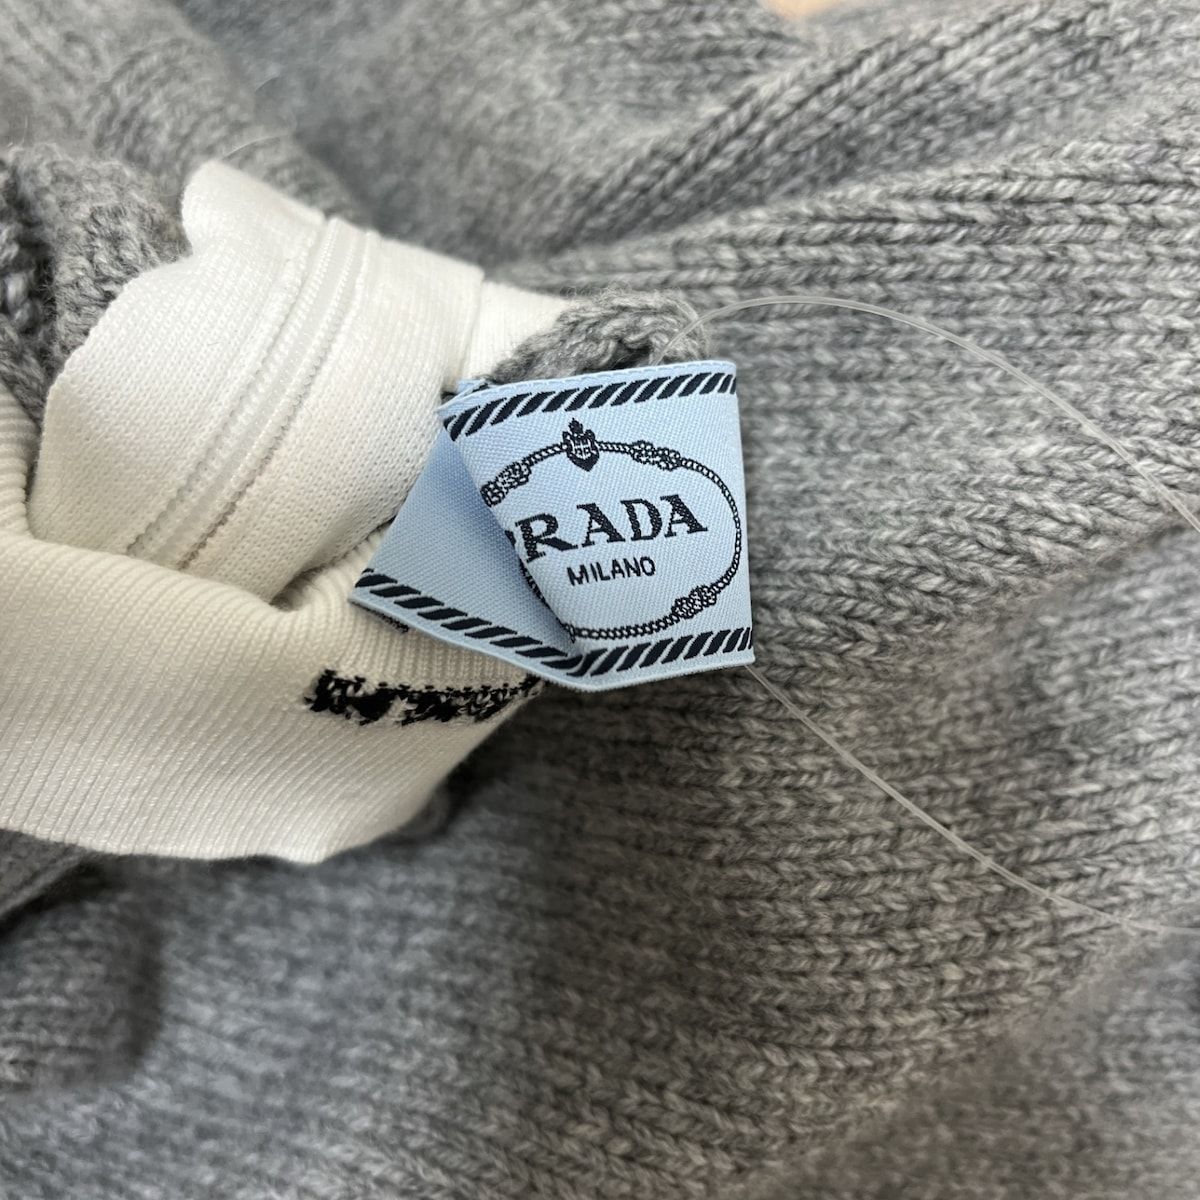 PRADA(プラダ) 長袖セーター サイズ36 S レディース - ライトグレー×白 ハイネック/2022年